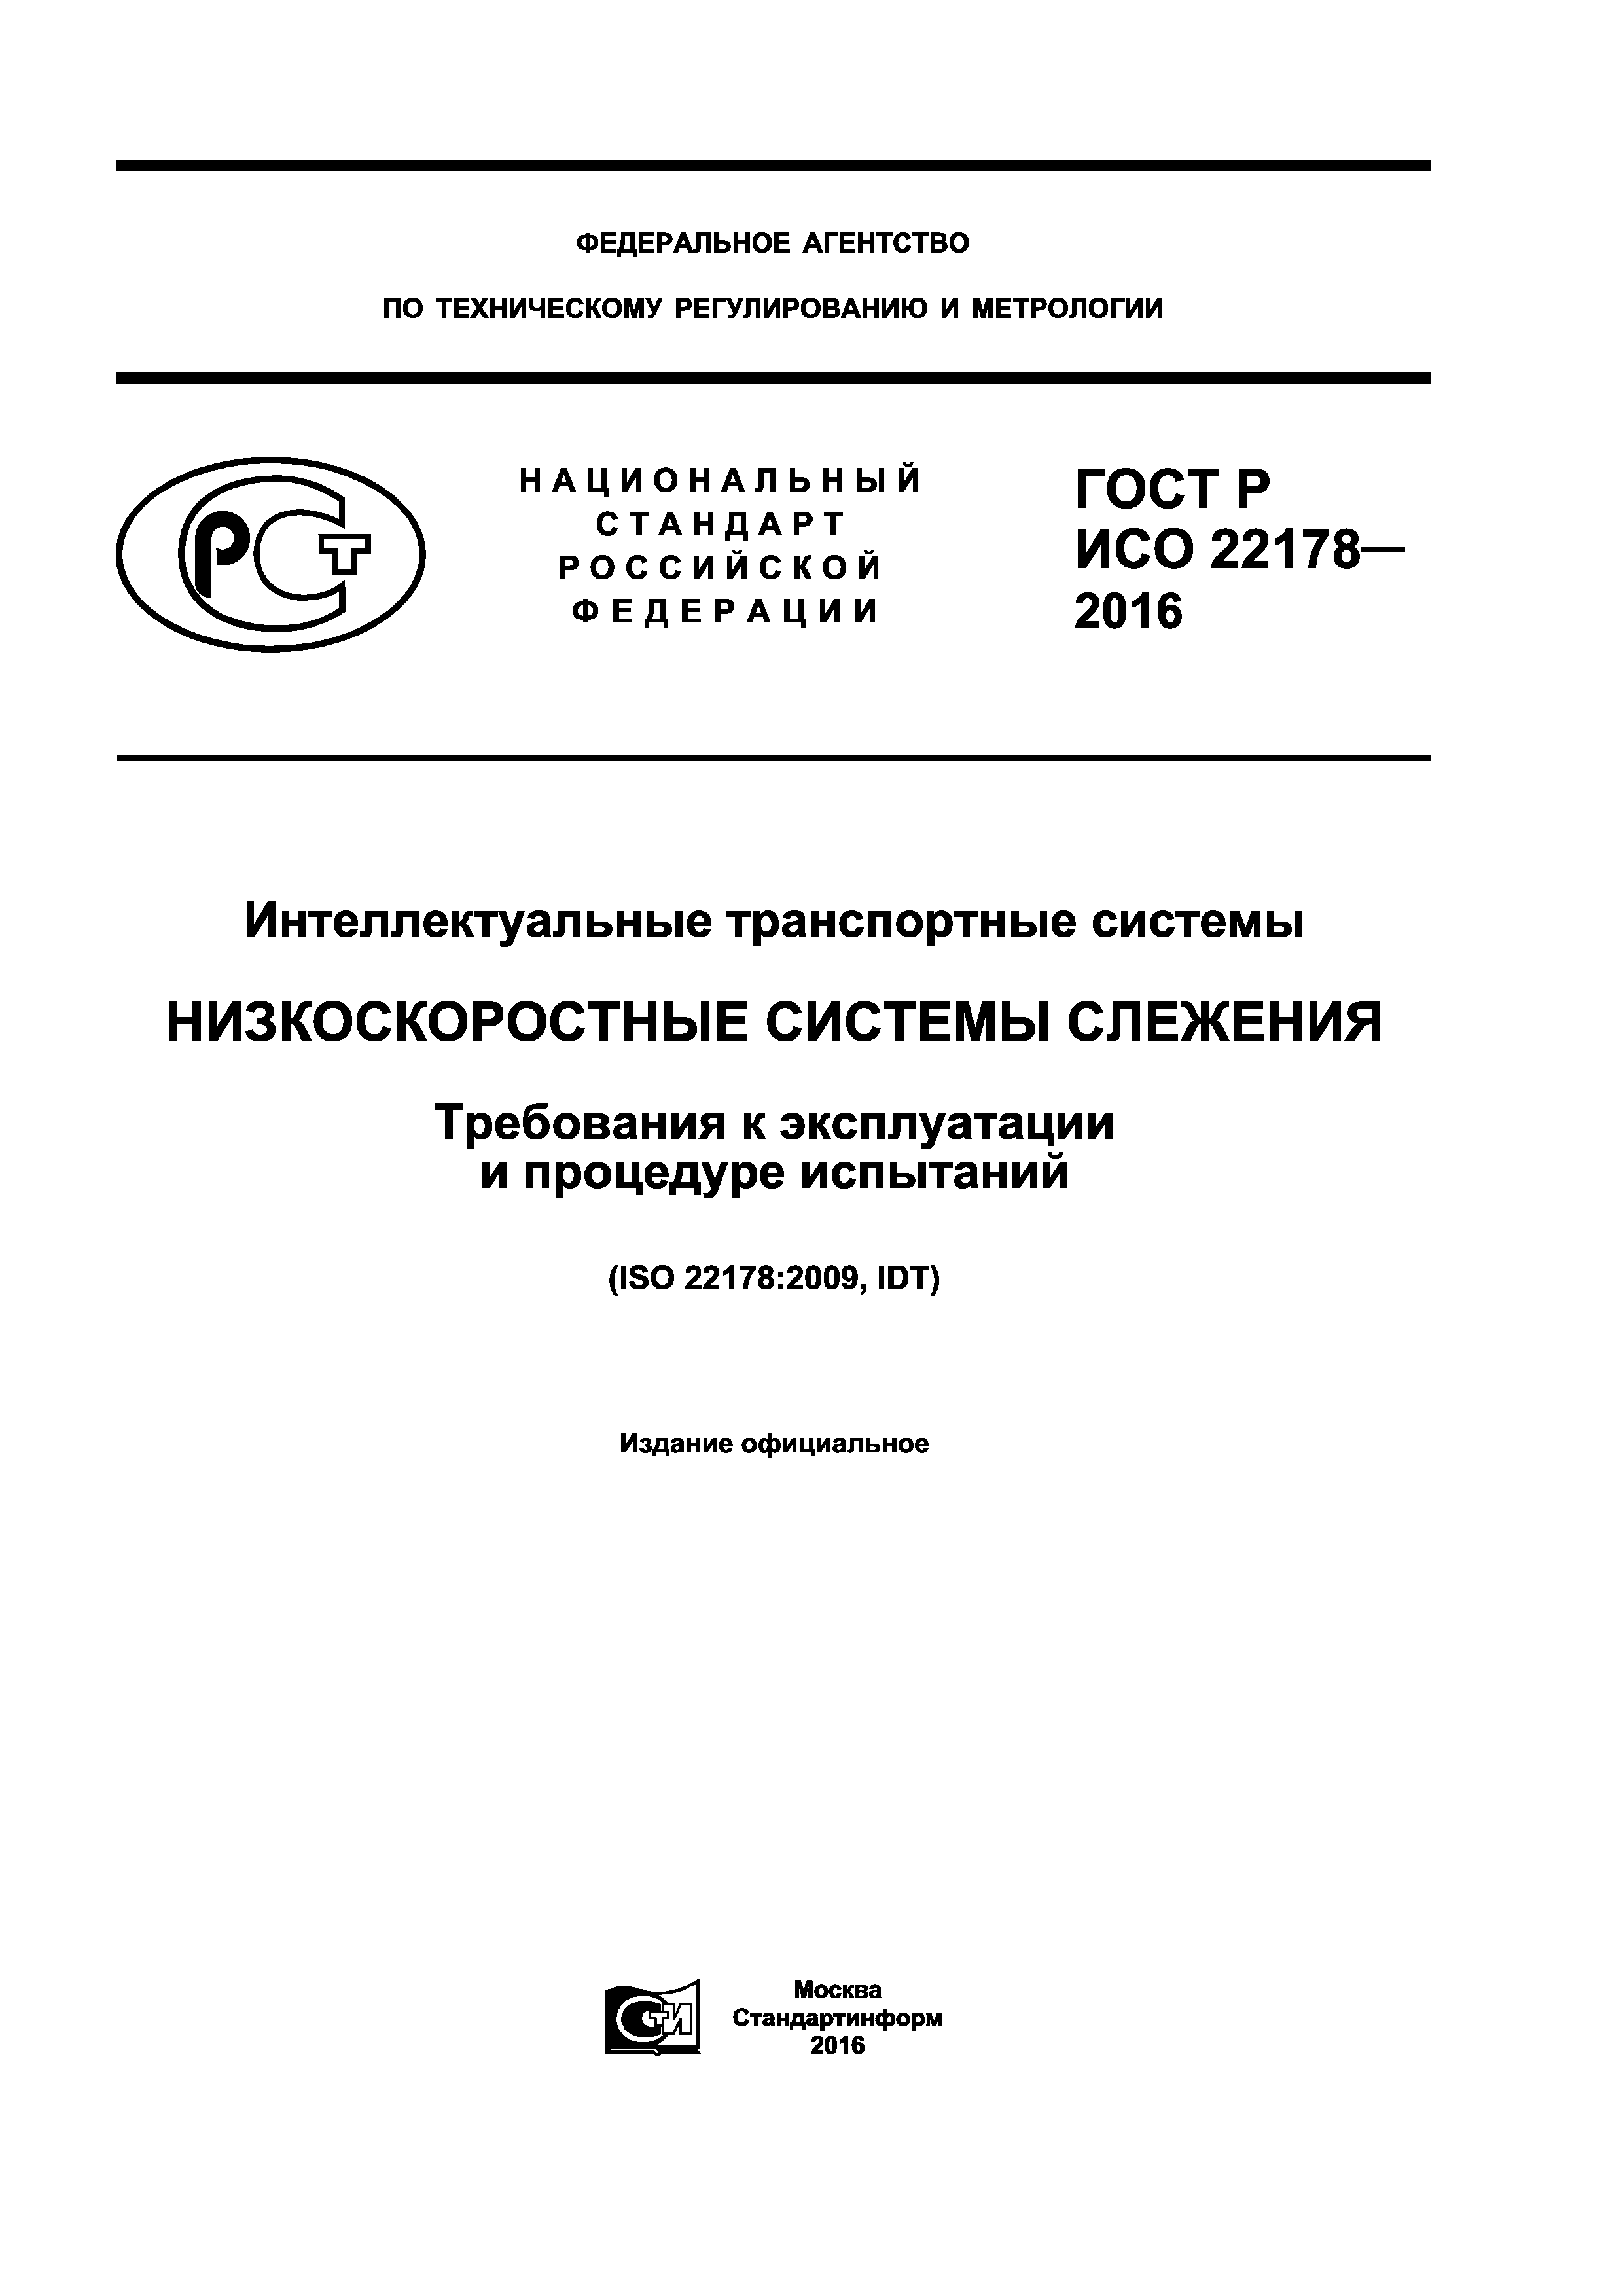 ГОСТ Р ИСО 22178-2016